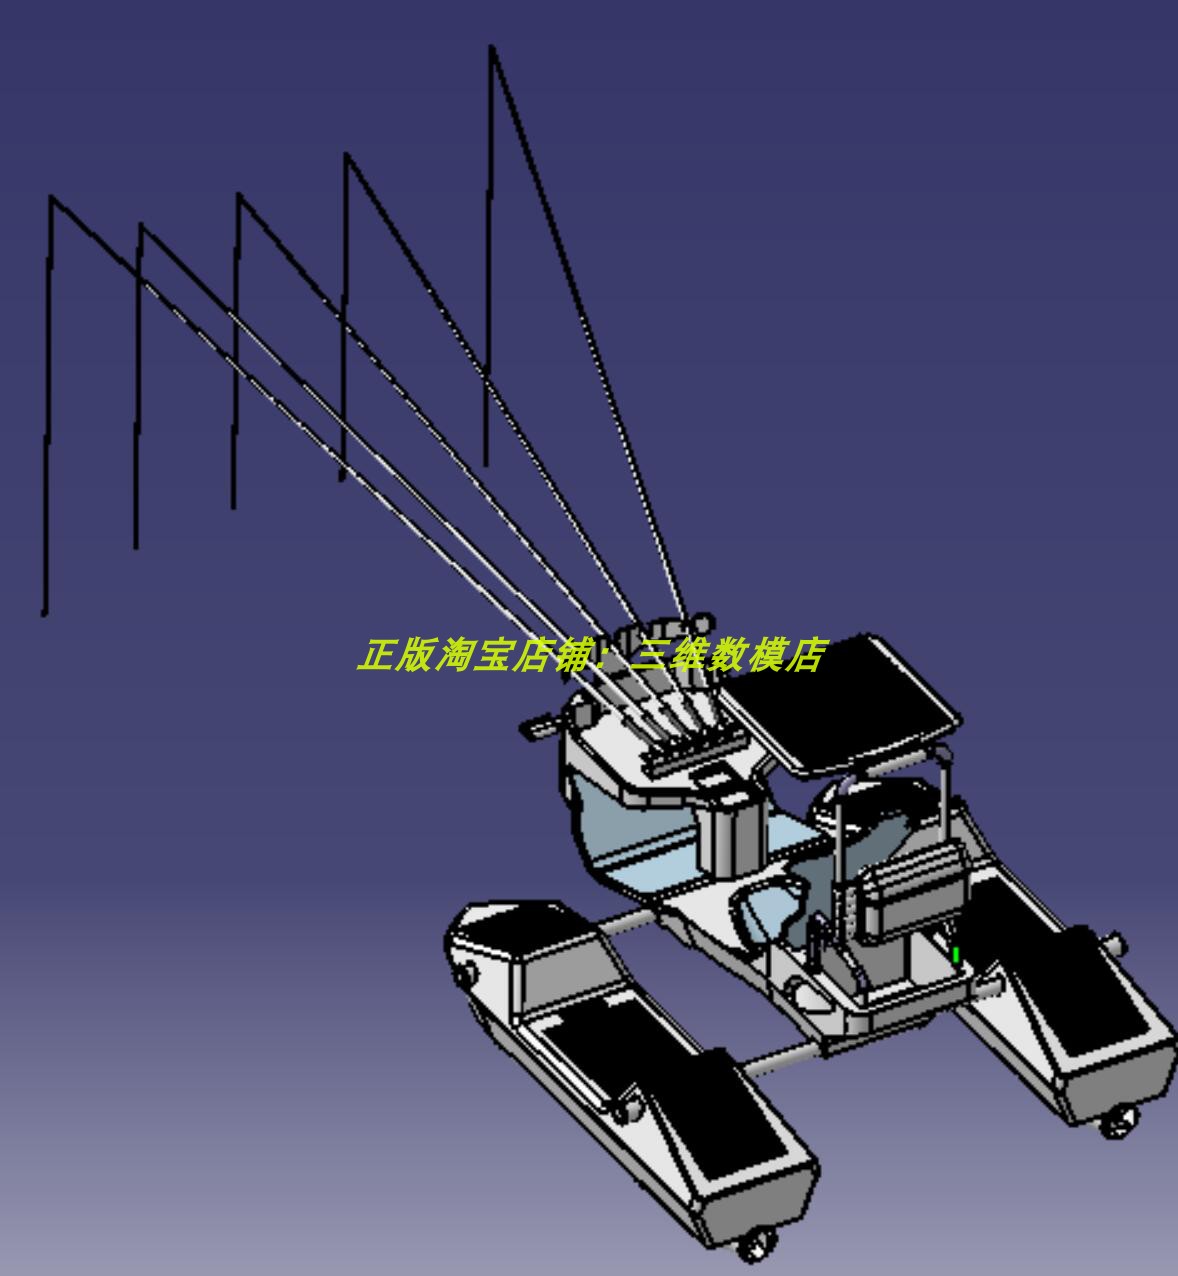 2米垂钓鱼船 双体艇小快艇摩托艇 单座椅3D三维几何数模型建模stp